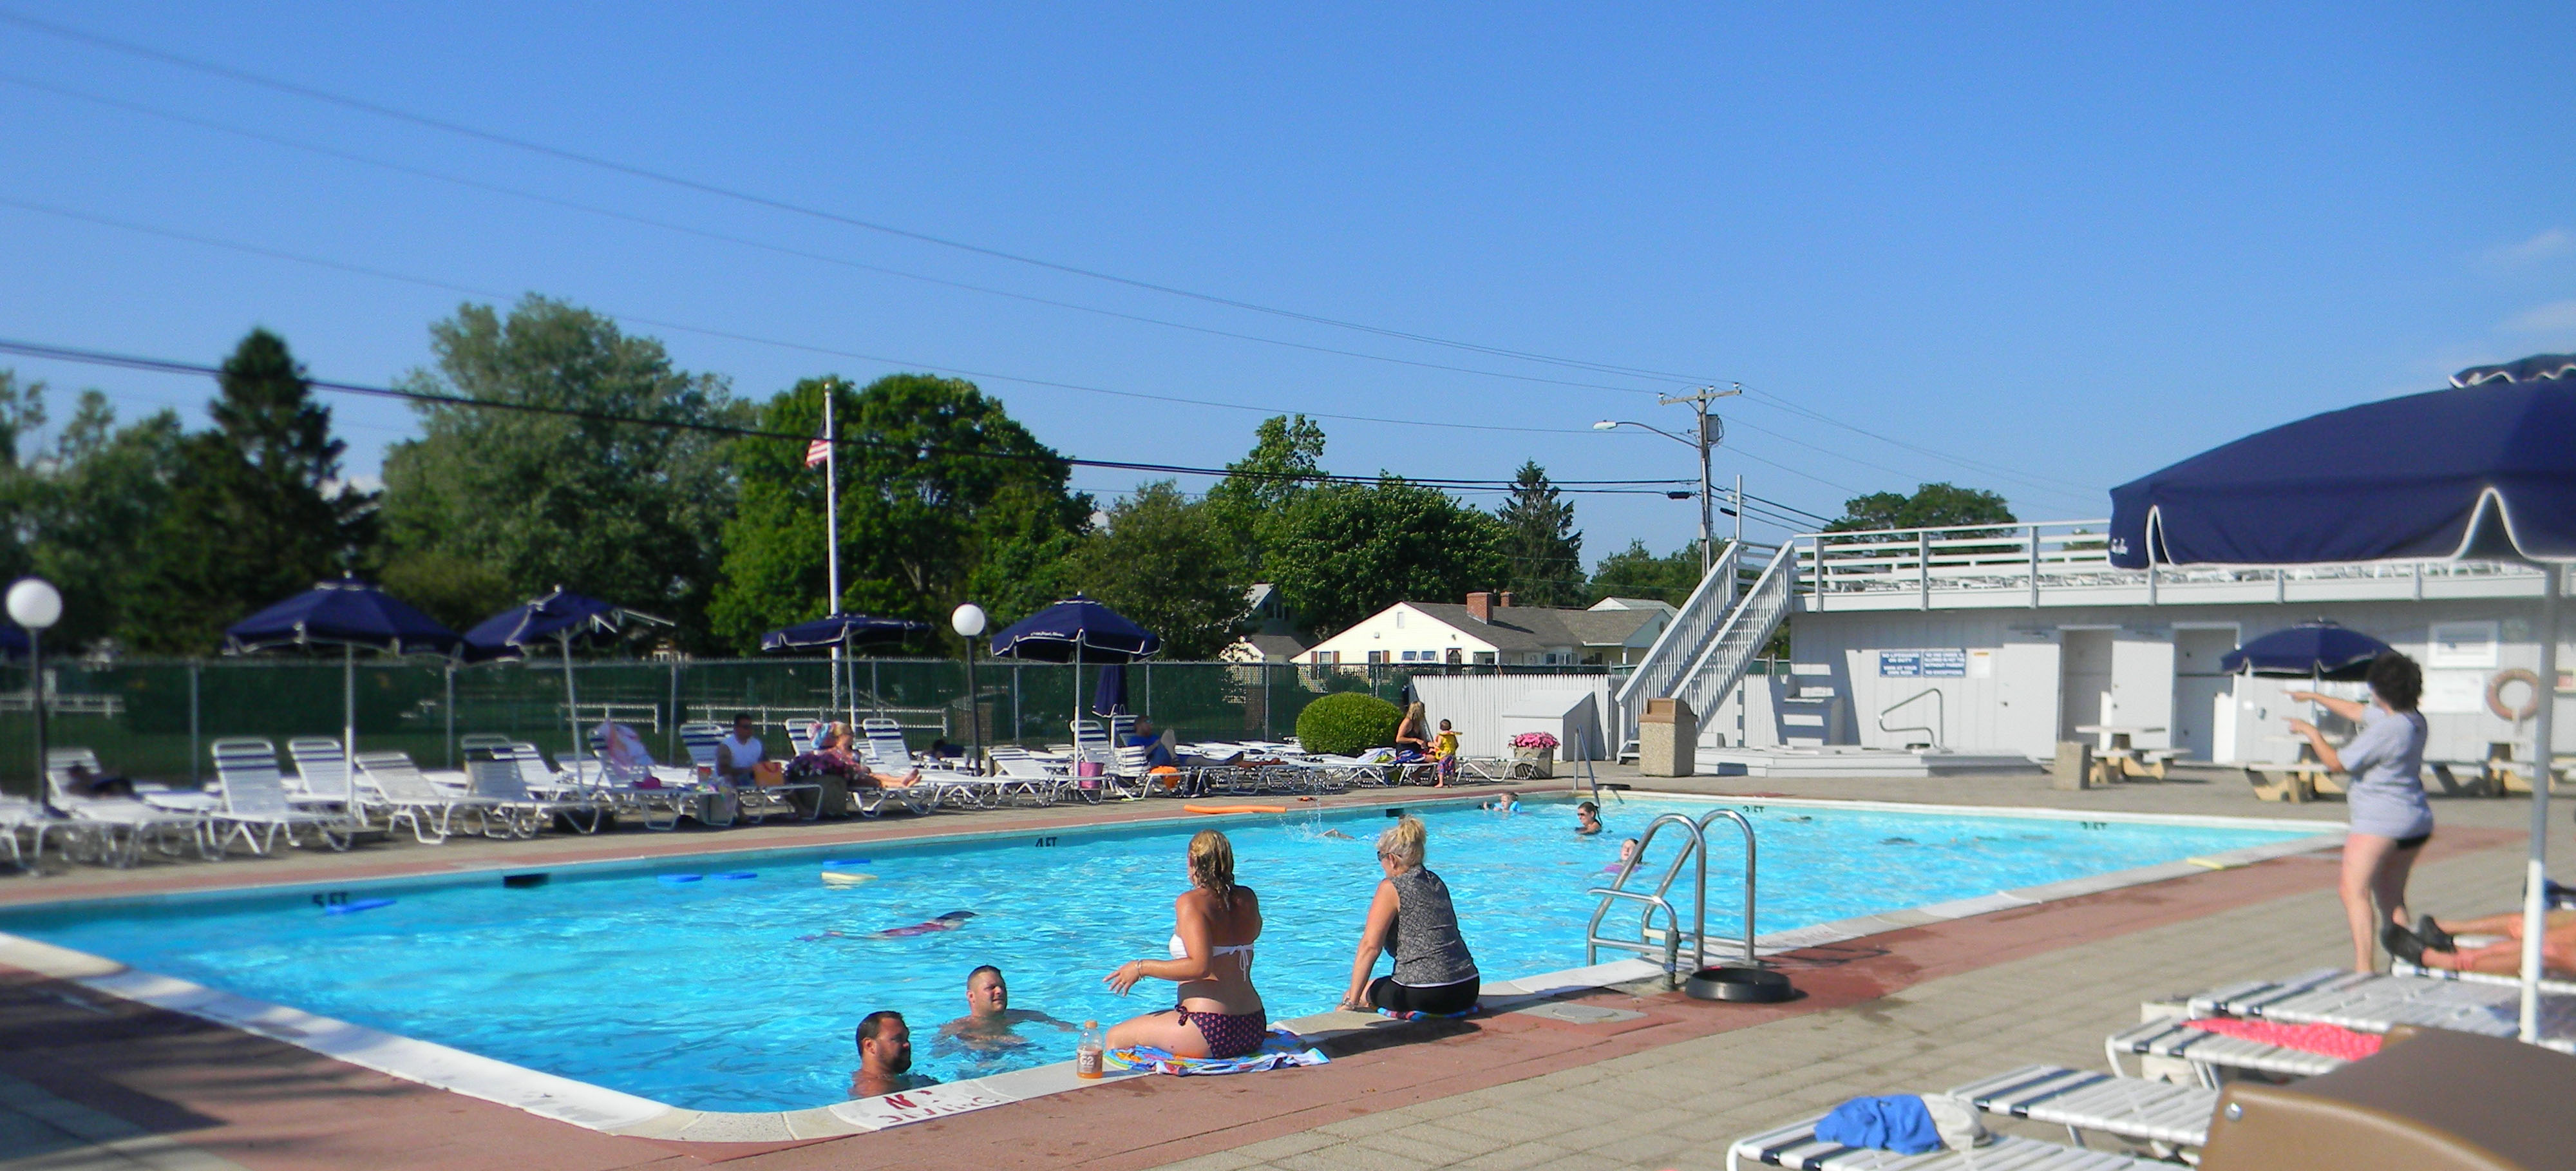 Cedar Island Marina in-ground heated swimming pool